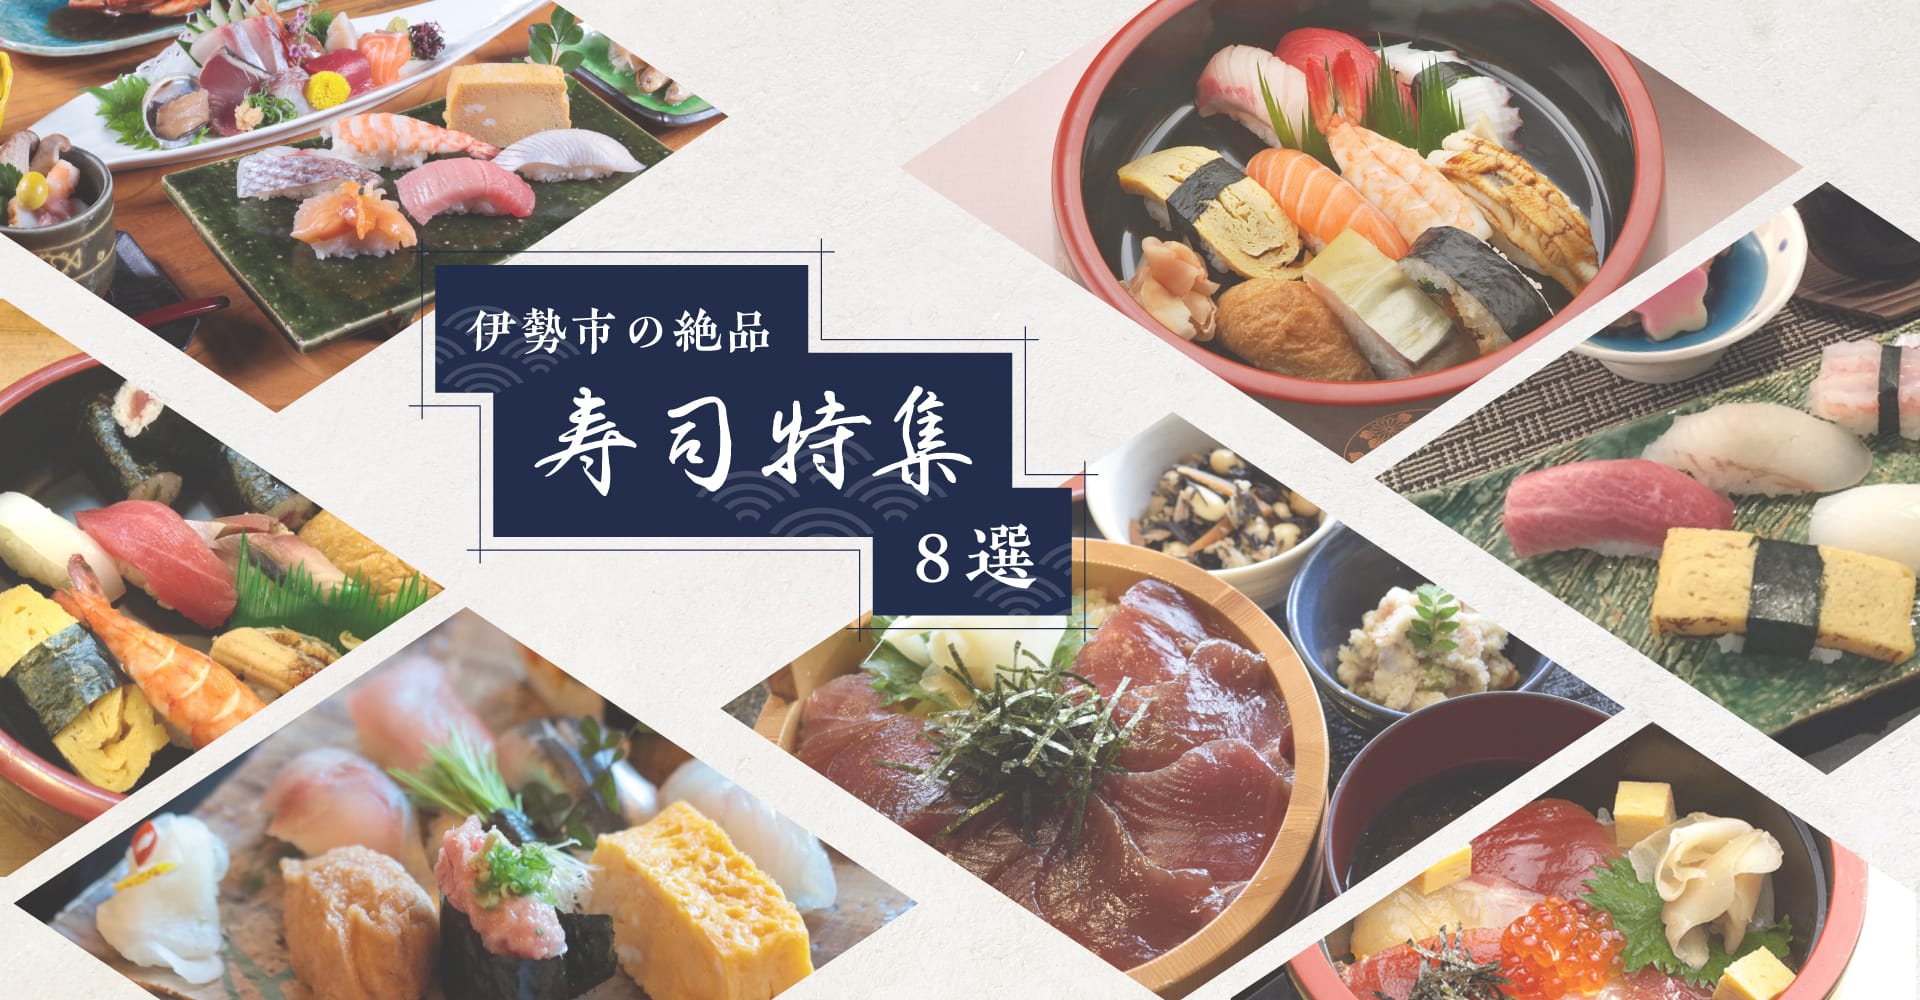 8 exquisite Sushi-Spezialitäten in Ise City